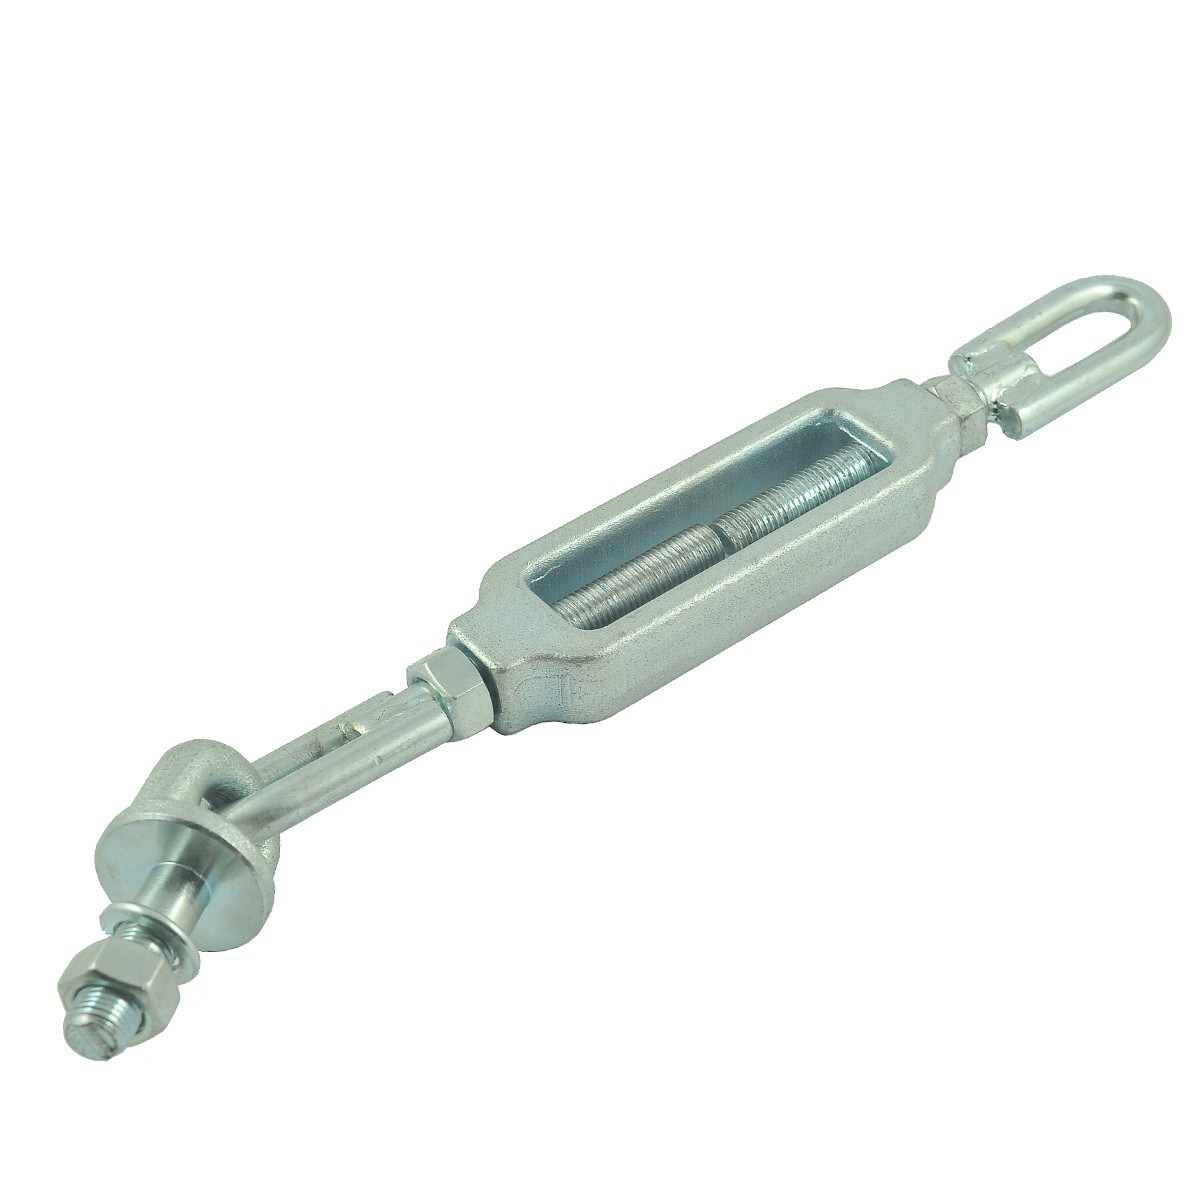 Linkage arm stabilizer / CAT I / 390-470 mm / Kubota L3008/L3608/L4708 / TC422-39702 / 5-08-120-37